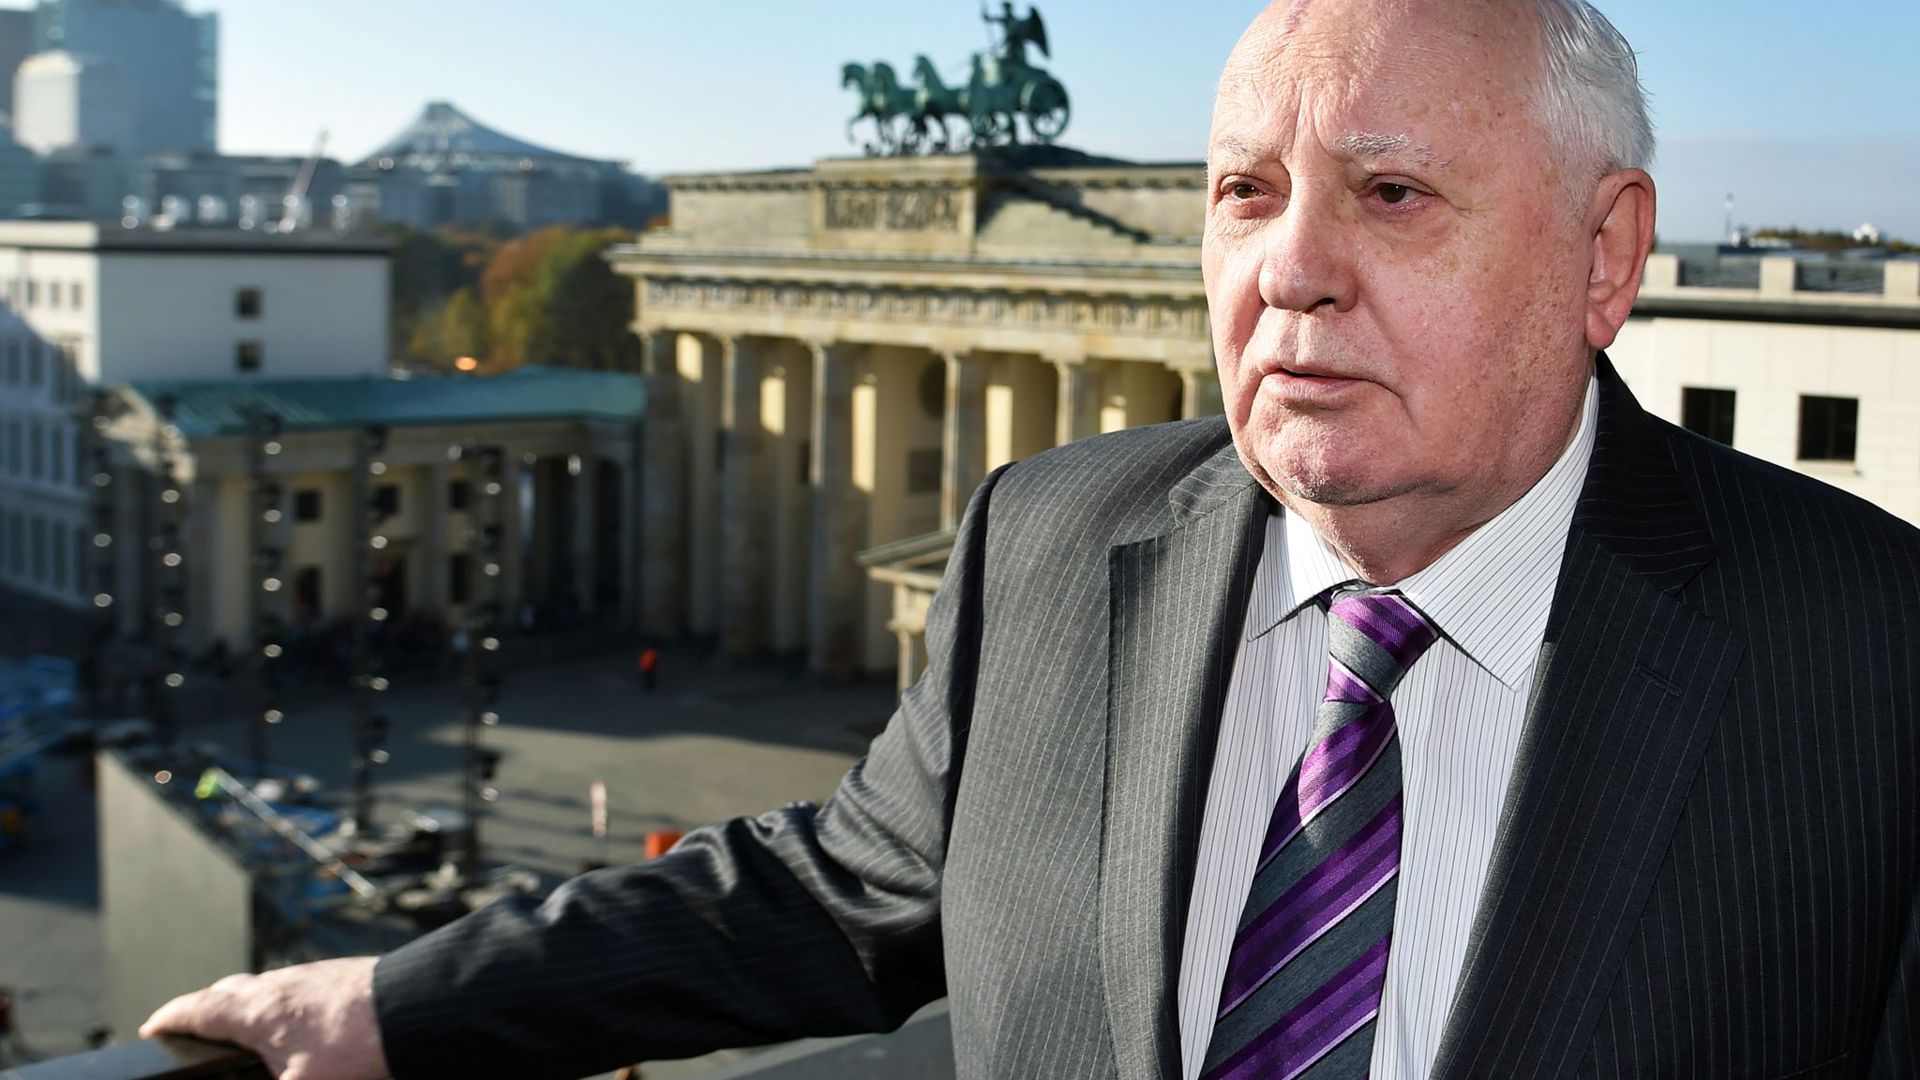 Der frühere sowjetische Staatspräsident Michail Gorbatschow am Pariser Platz in Berlin, im Hintergrund das Brandenburger Tor.